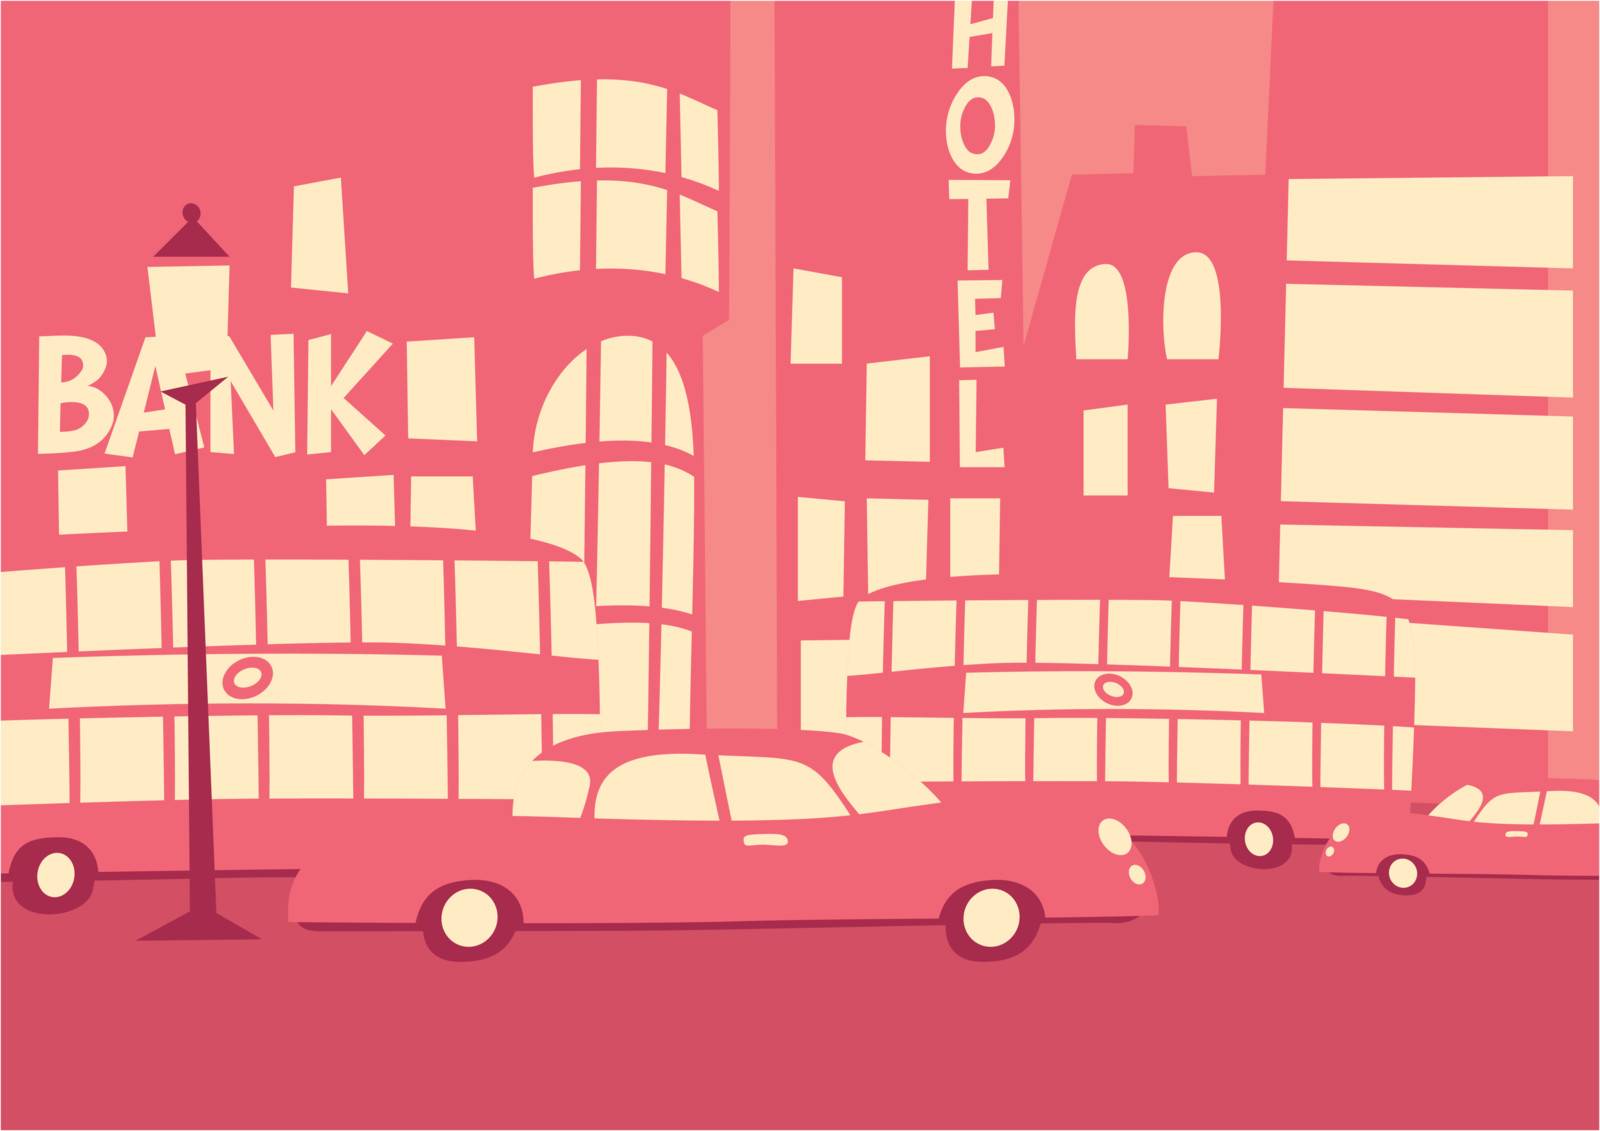 Pink Metropolis by slazdi